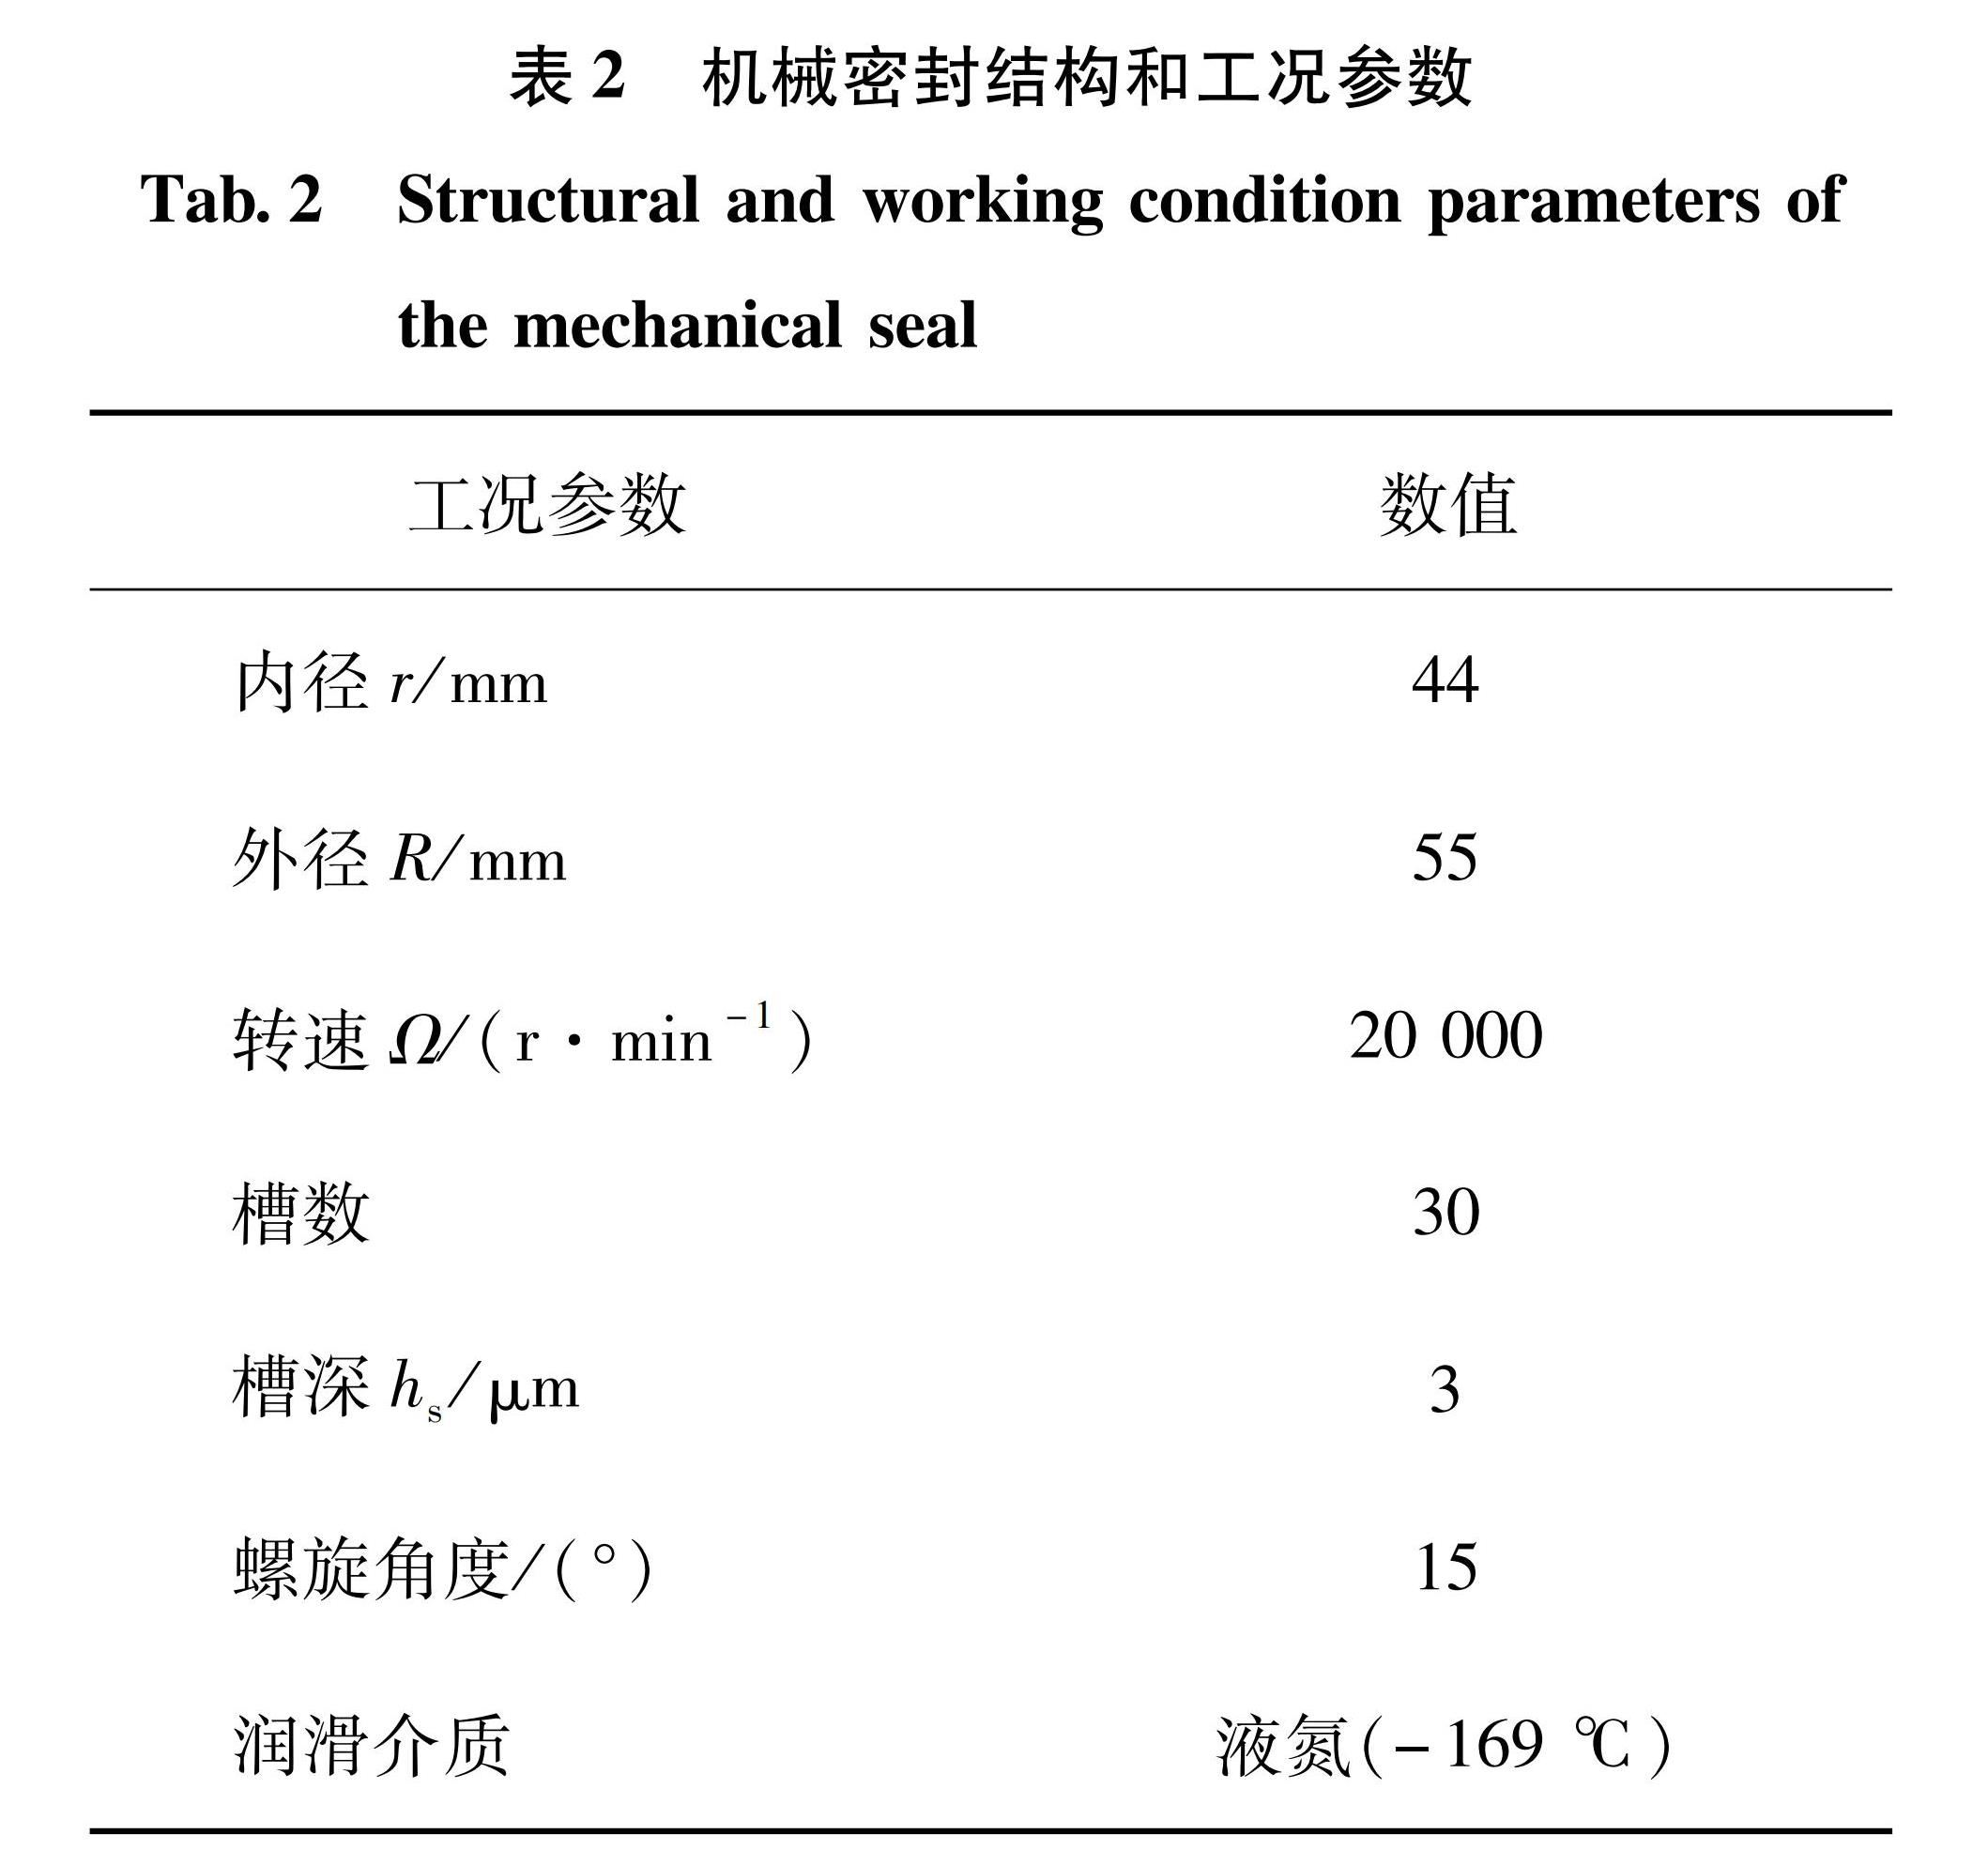 表2 机械密封结构和工况参数<br/>Tab.2 Structural and working condition parameters of the mechanical seal